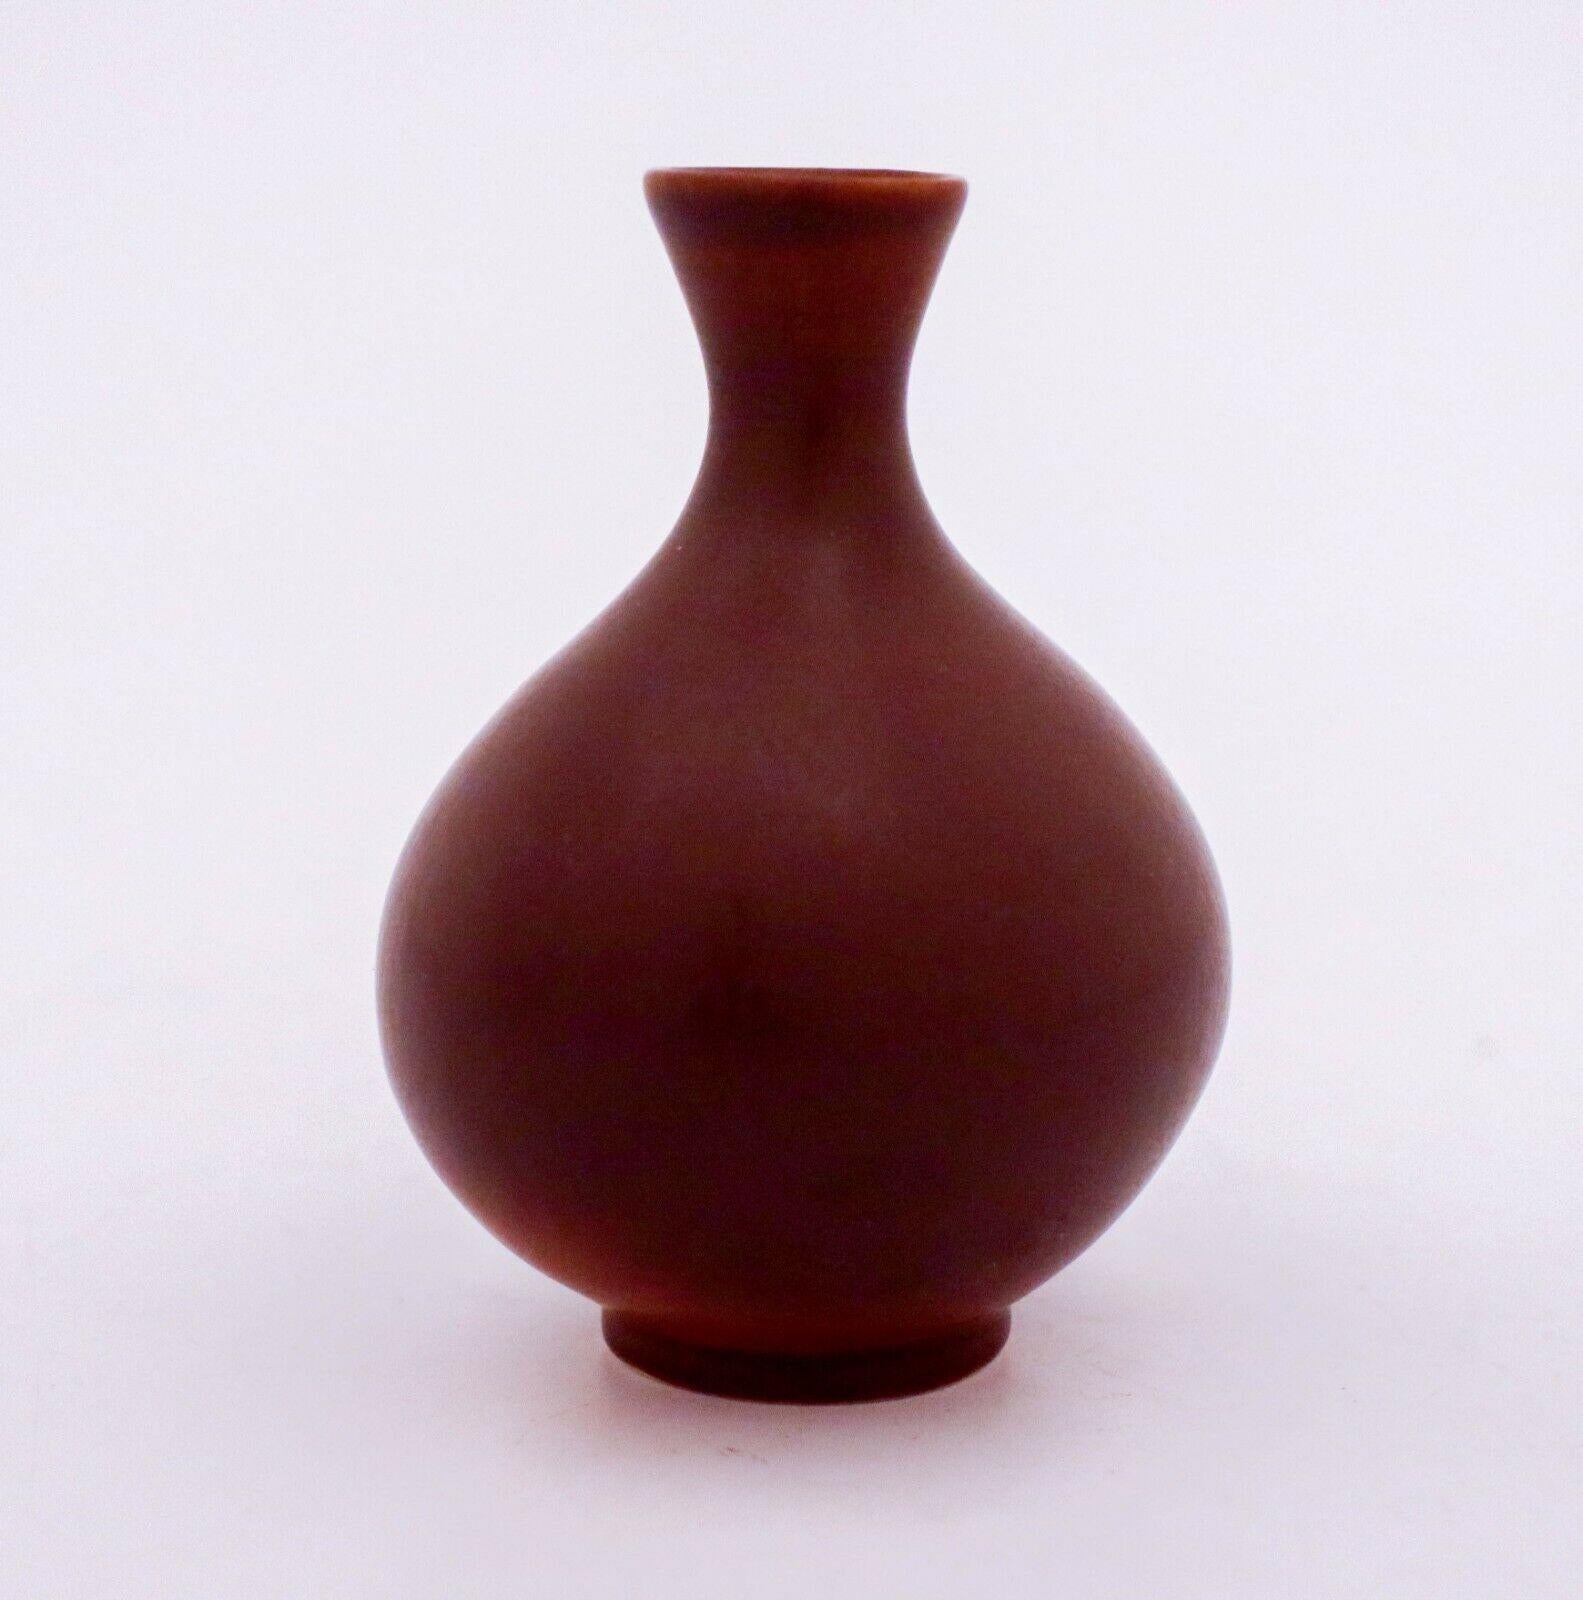 Un vase brun conçu par Berndt Friberg chez Gustavsberg à Stockholm. Le vase mesure 8 cm de haut. Il fait partie de la série Selecta et il est en parfait état.